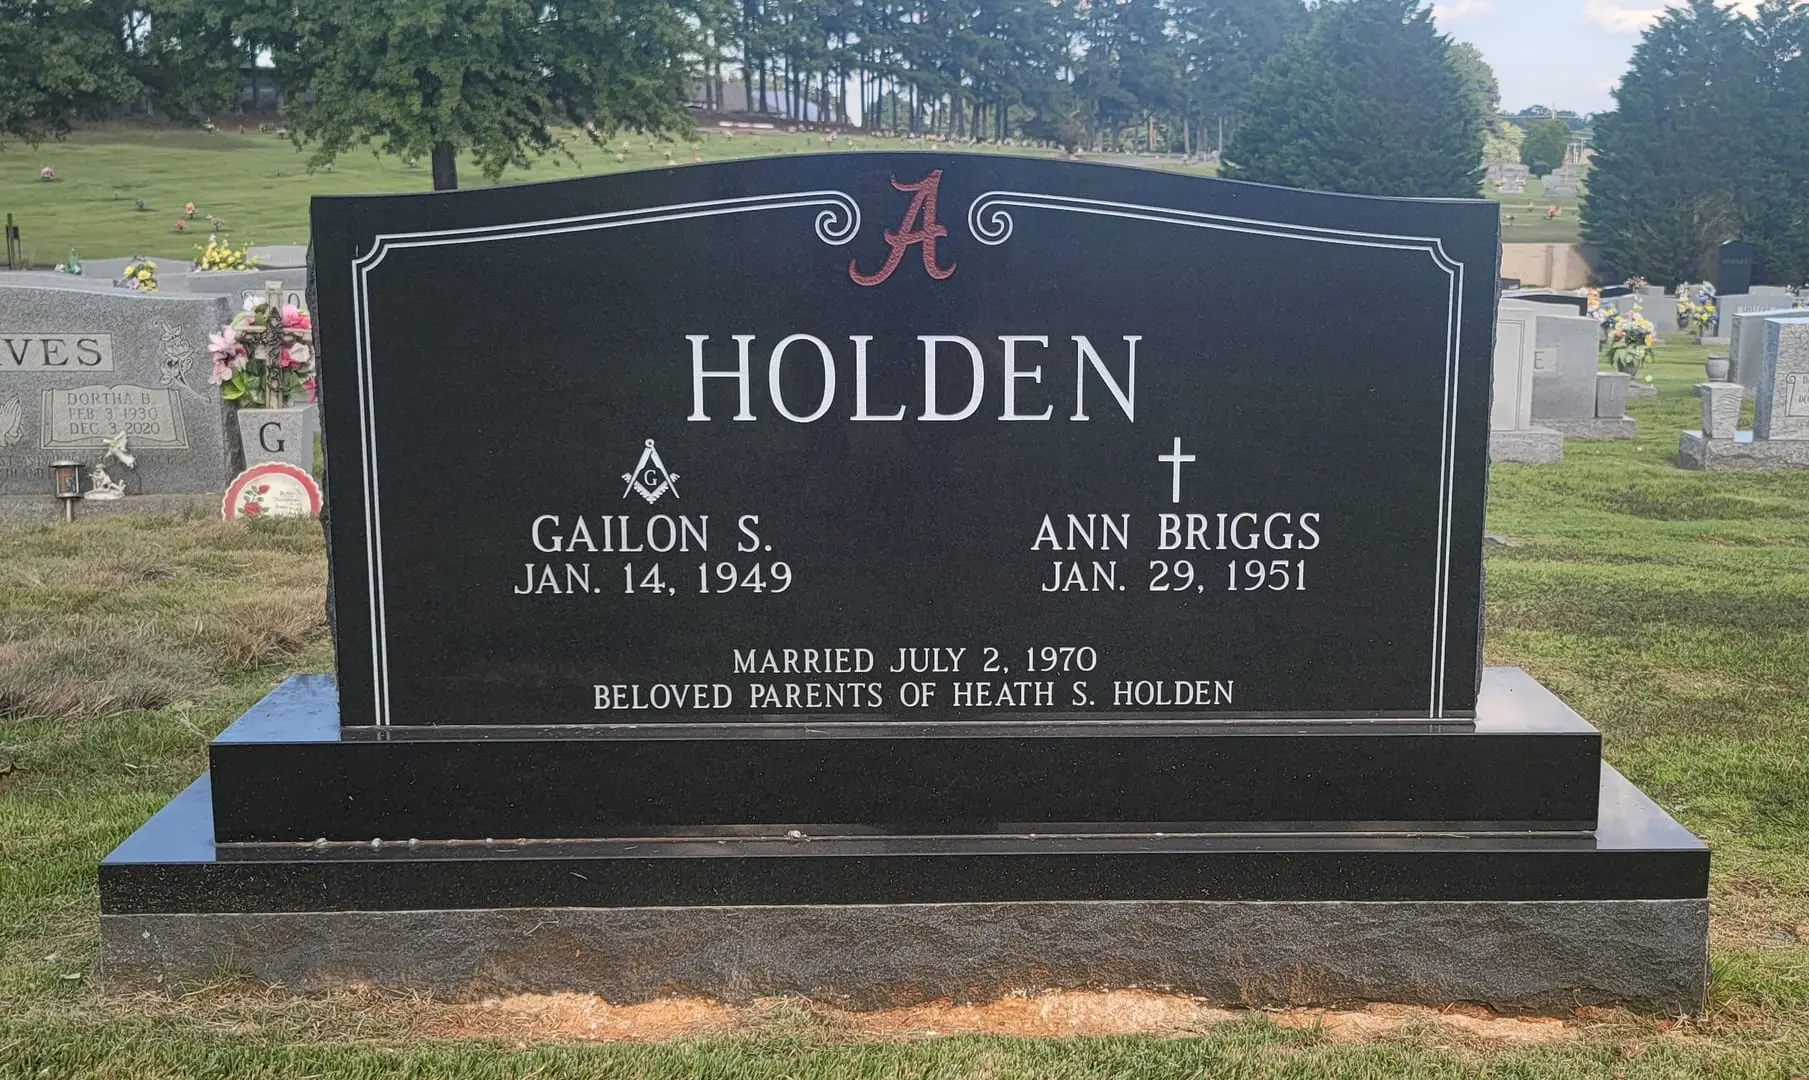 A memorial slab for Gailon S. and Ann Briggs